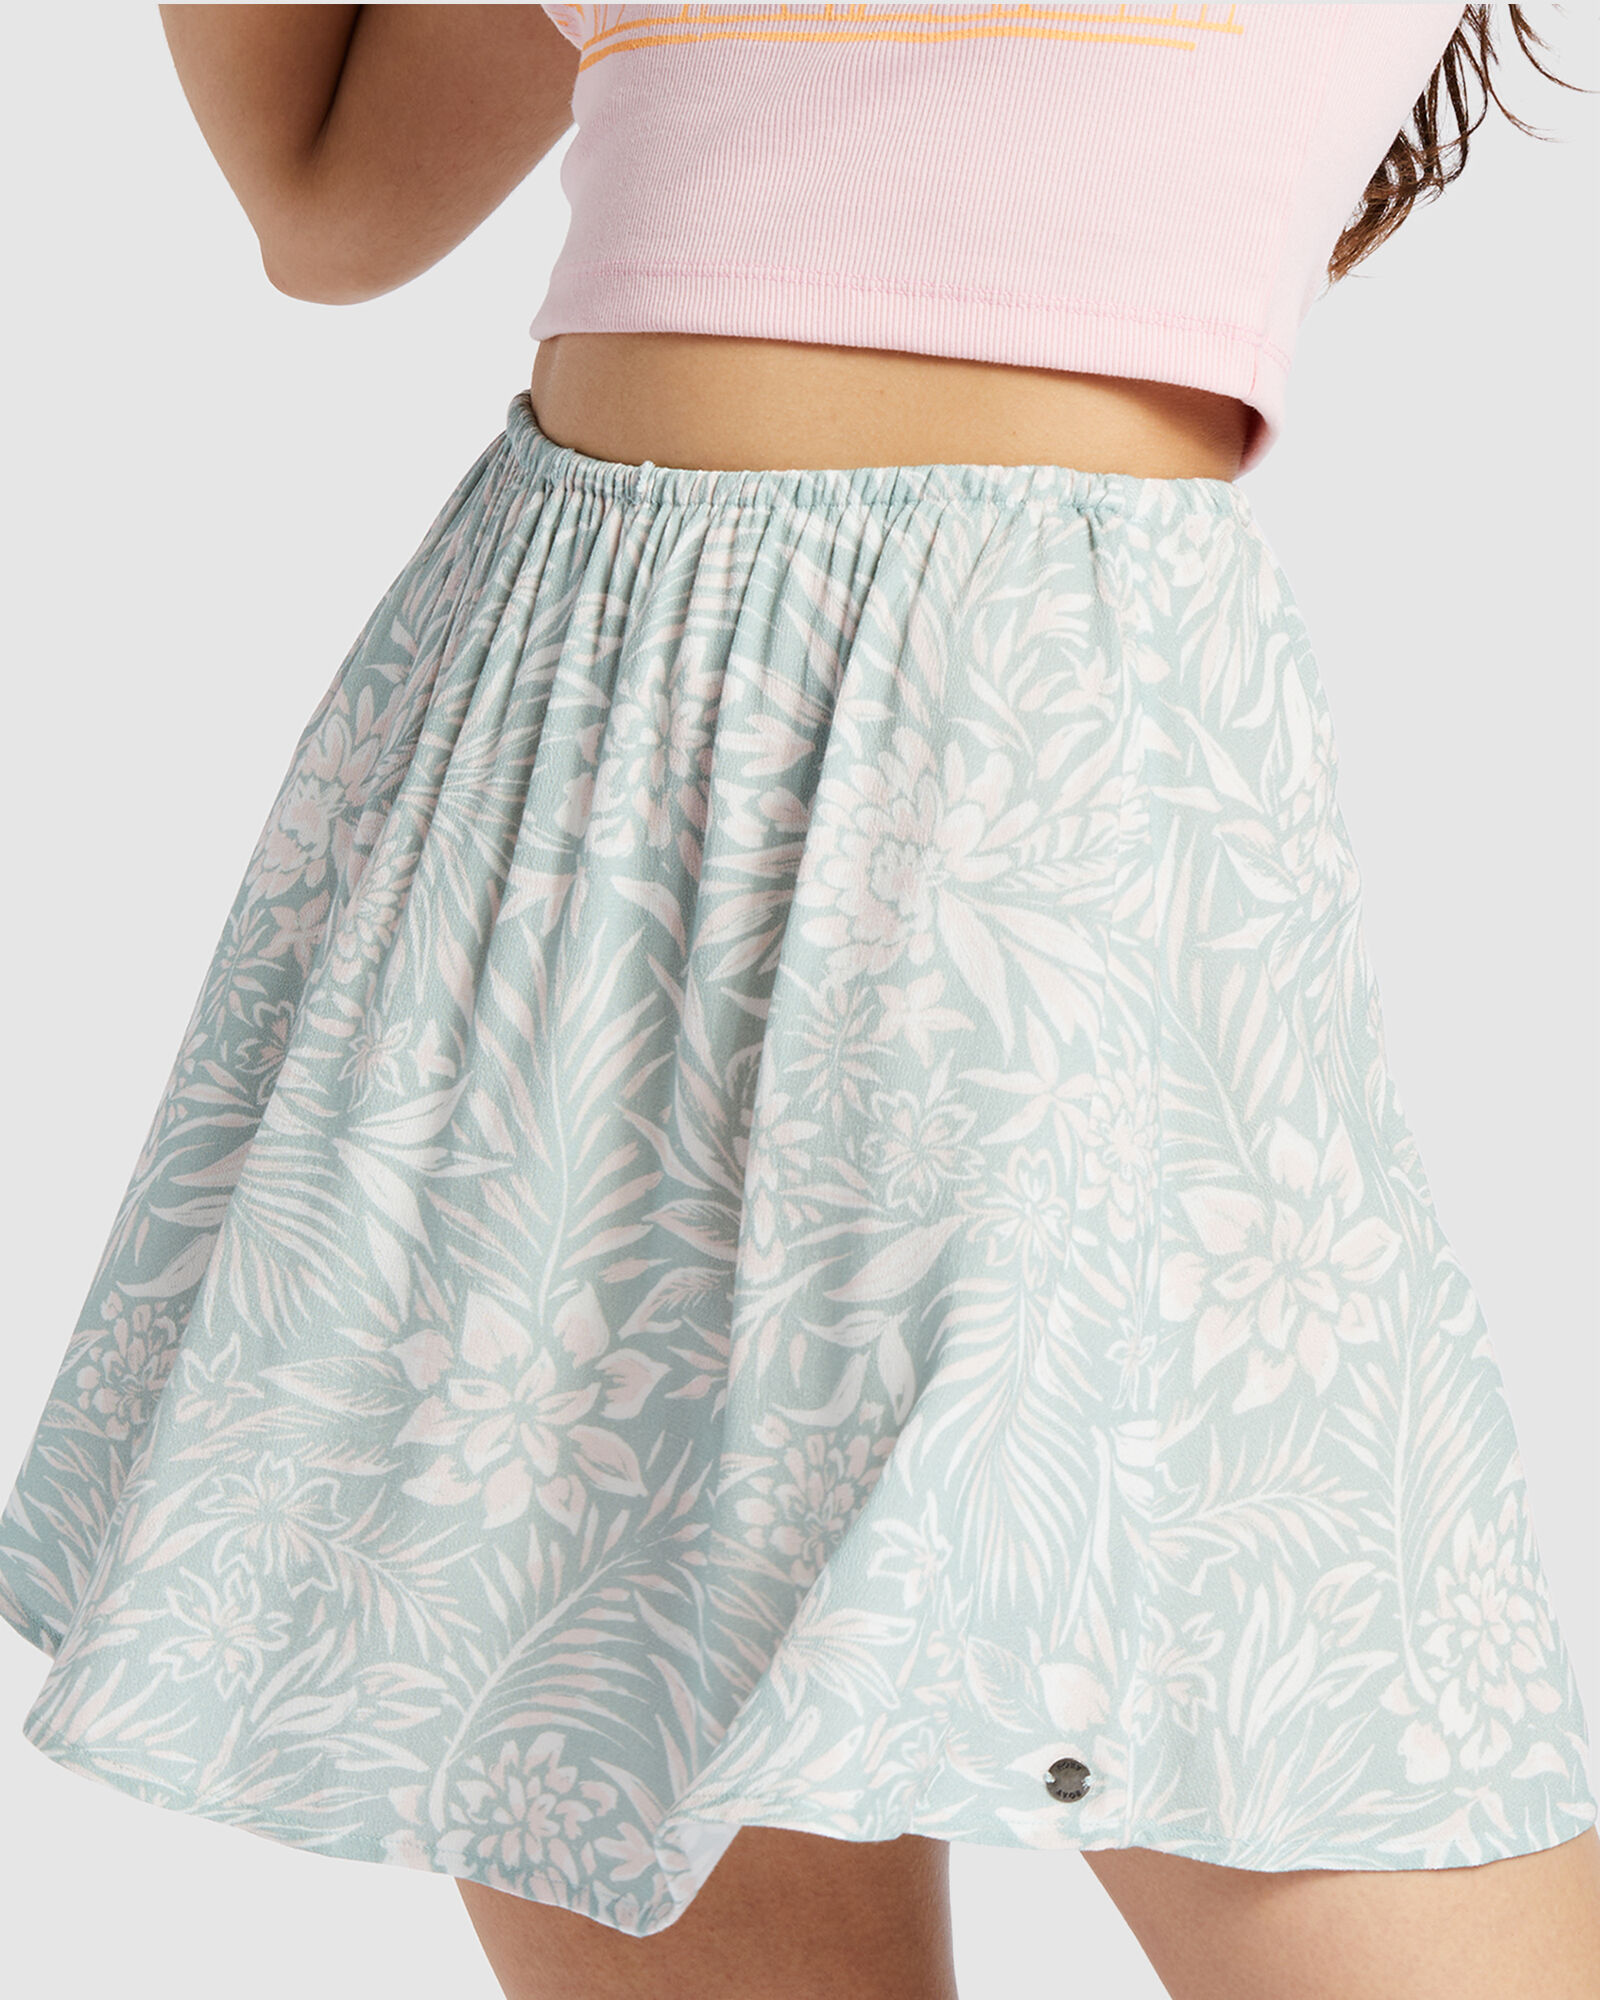 Vintage Roxy Mini Skirt Plaid, M | eBay